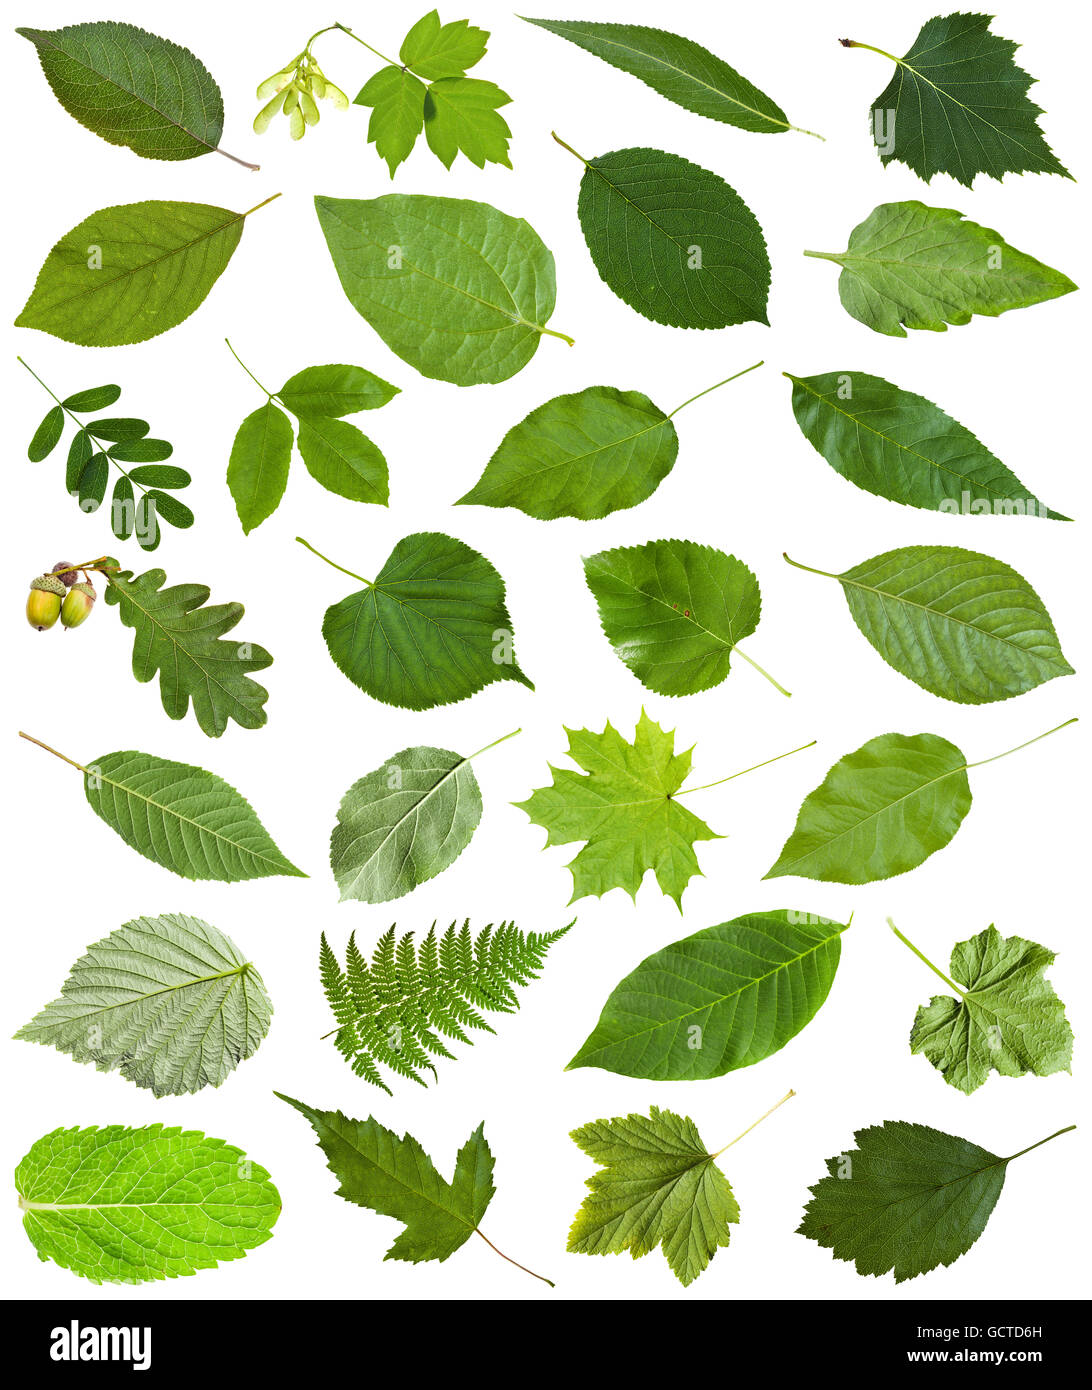 Satz von Varuious grüne Blätter isoliert auf weiss - Hawberry, Ahorn, Acer, Sambucus, Holunder, Birke, Farn, Fraxinus, Esche, Eiche, ein Stockfoto